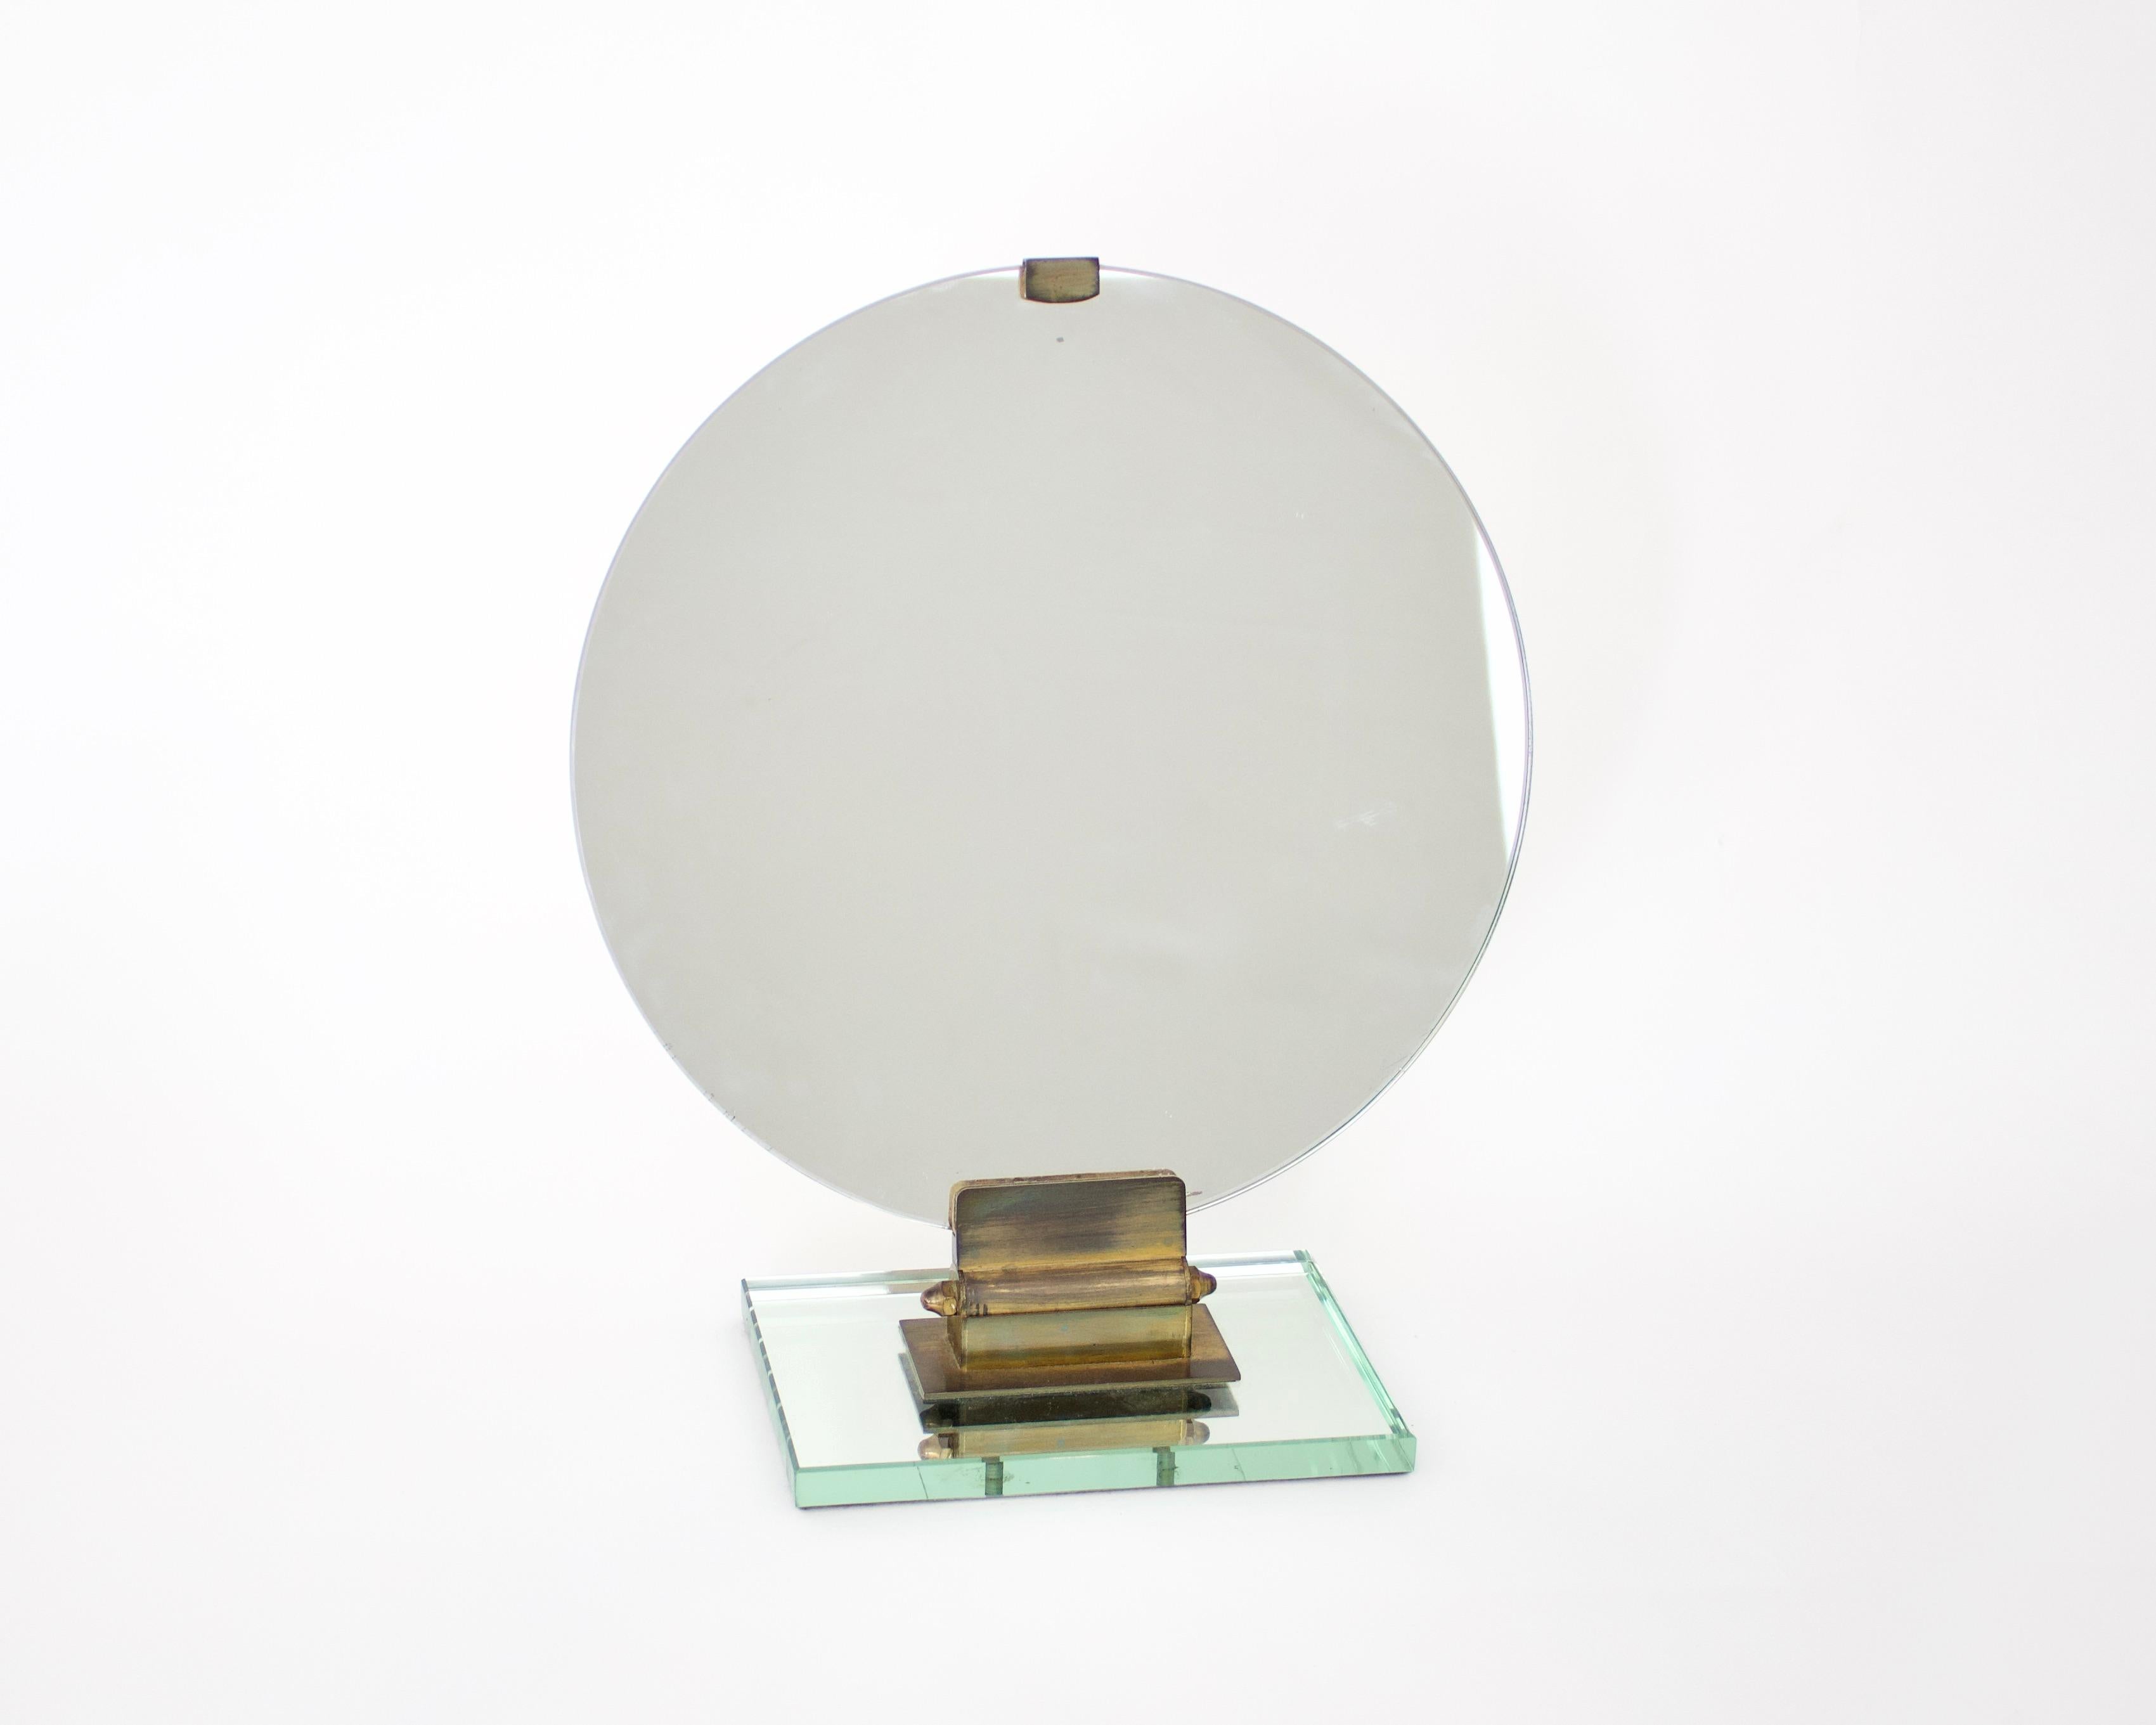 Un chic miroir de vanité ou miroir de commode de Jacques Adnet en verre original avec base et détails en bronze assis sur une base parfaite en verre biseauté fotnatna arte miroir. Le miroir n'a pas d'éclats ni de défauts. Le miroir a un diamètre de